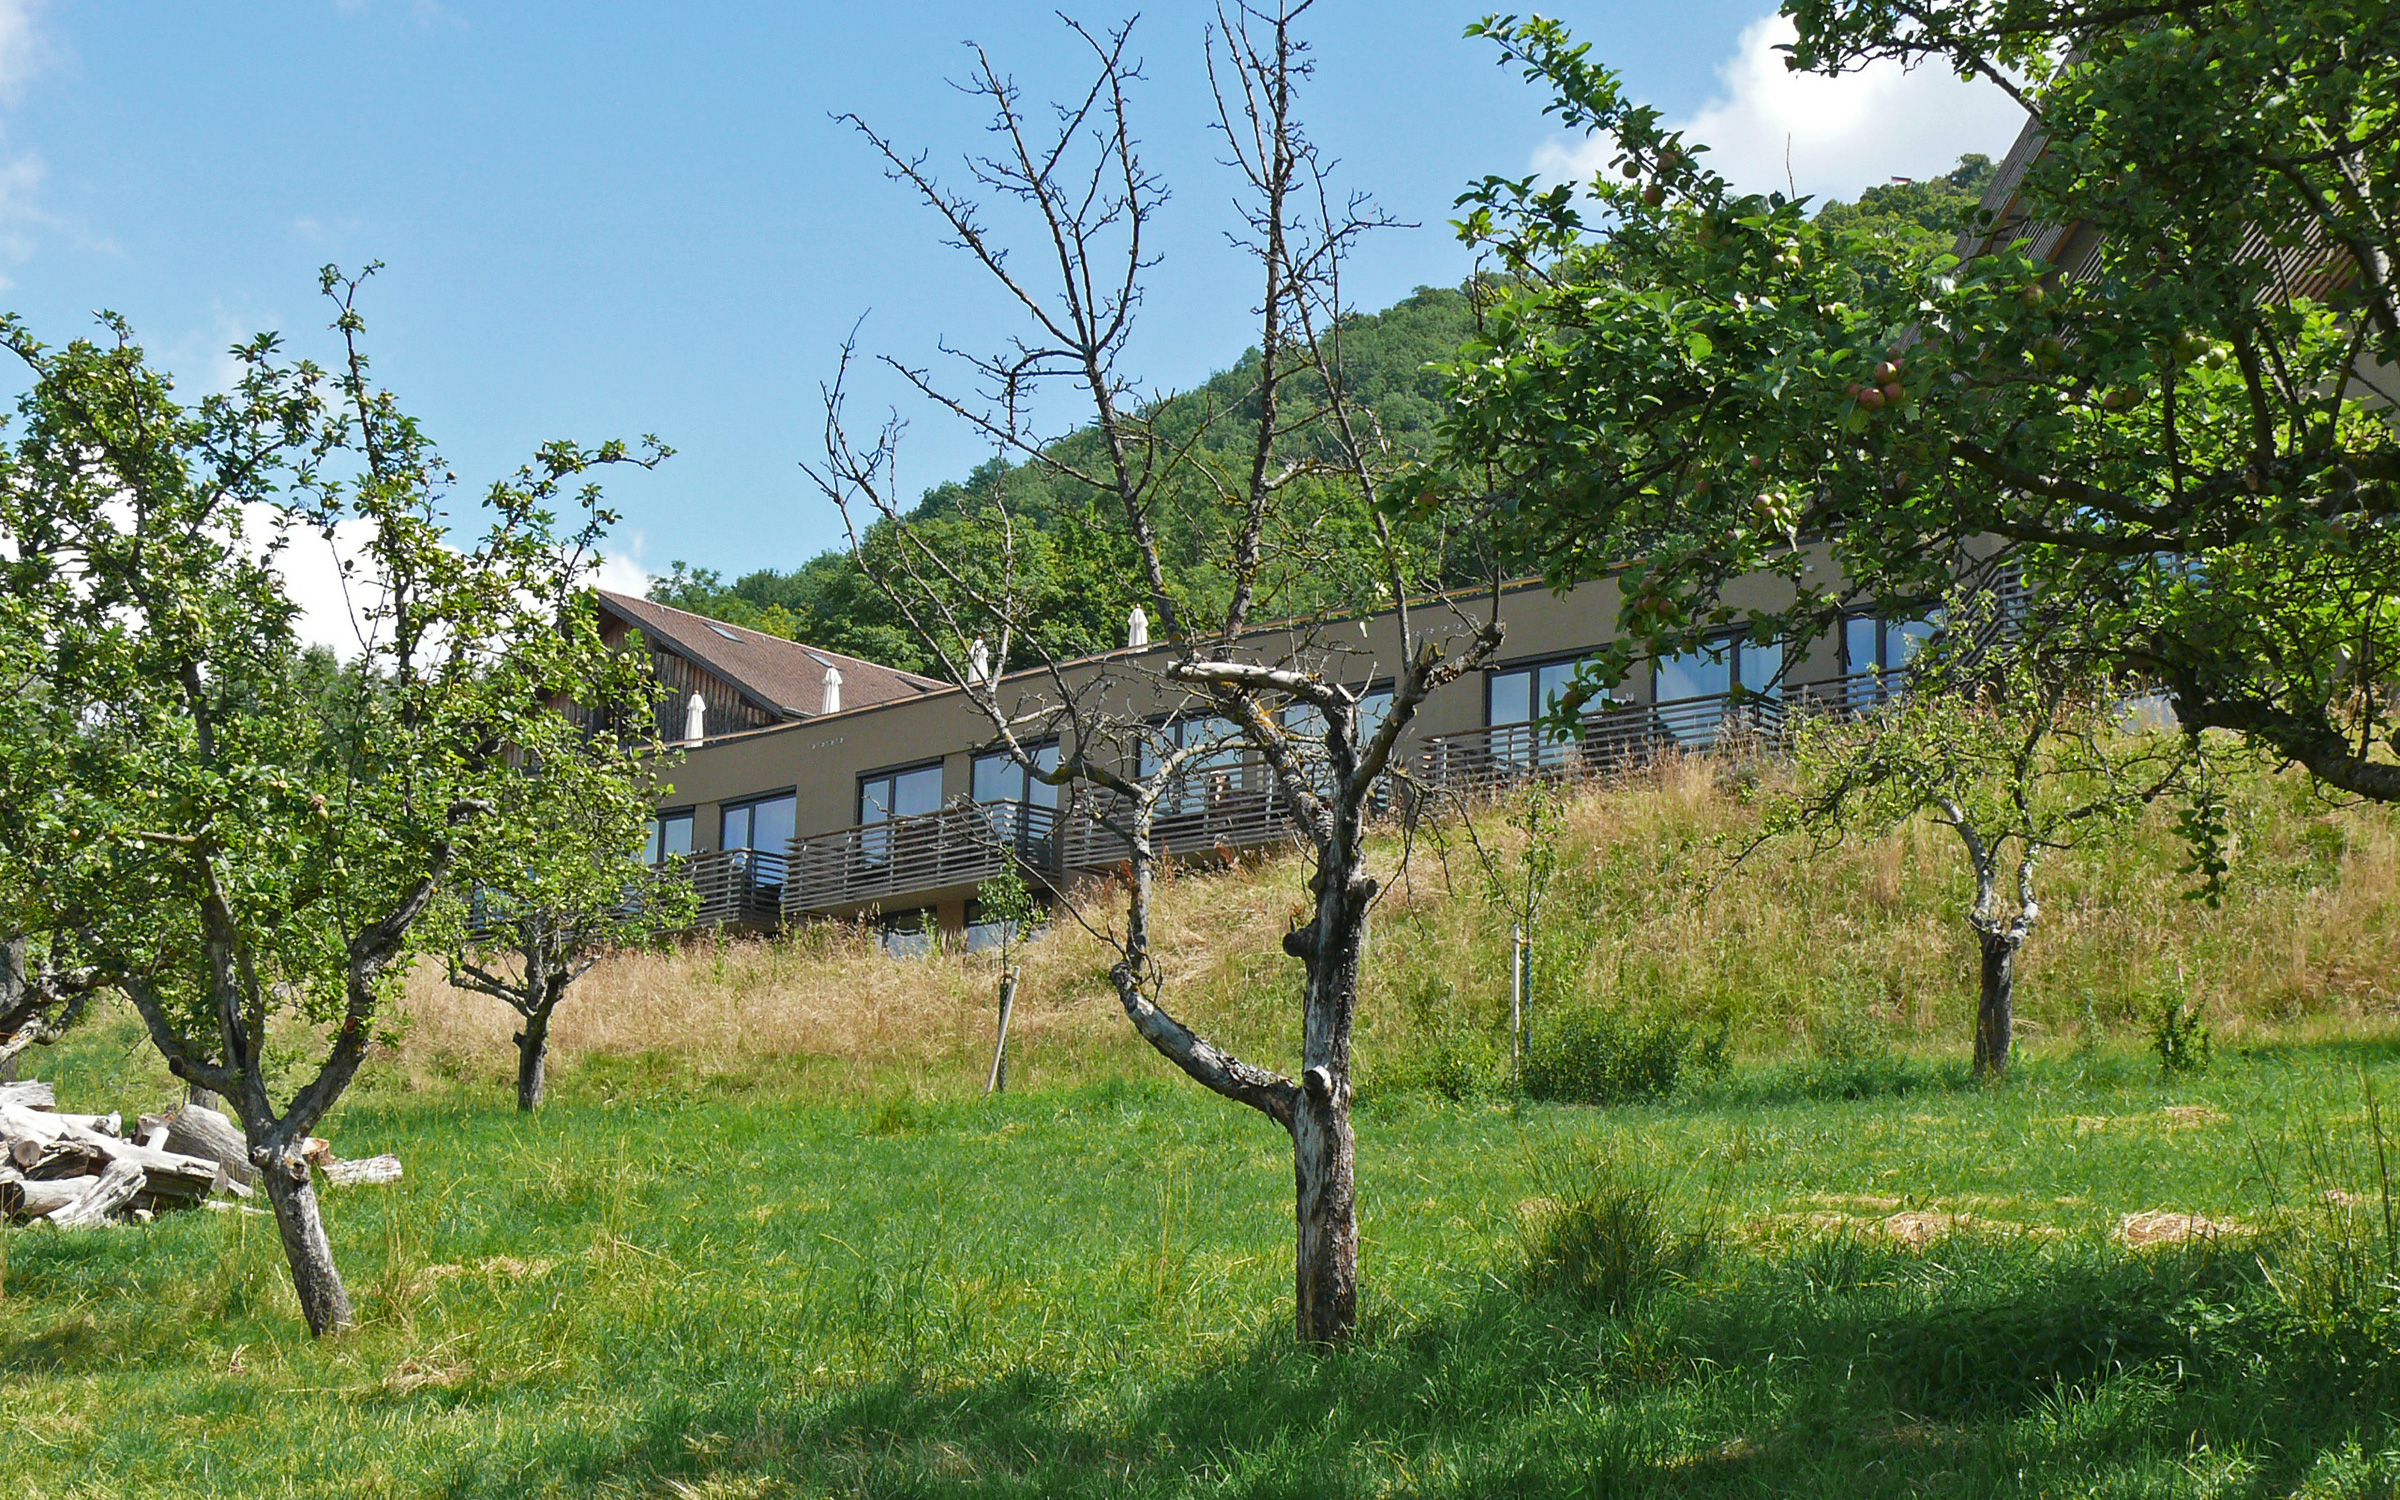 Hotelgebäude und Wiese mit Obstbäumen am Hang